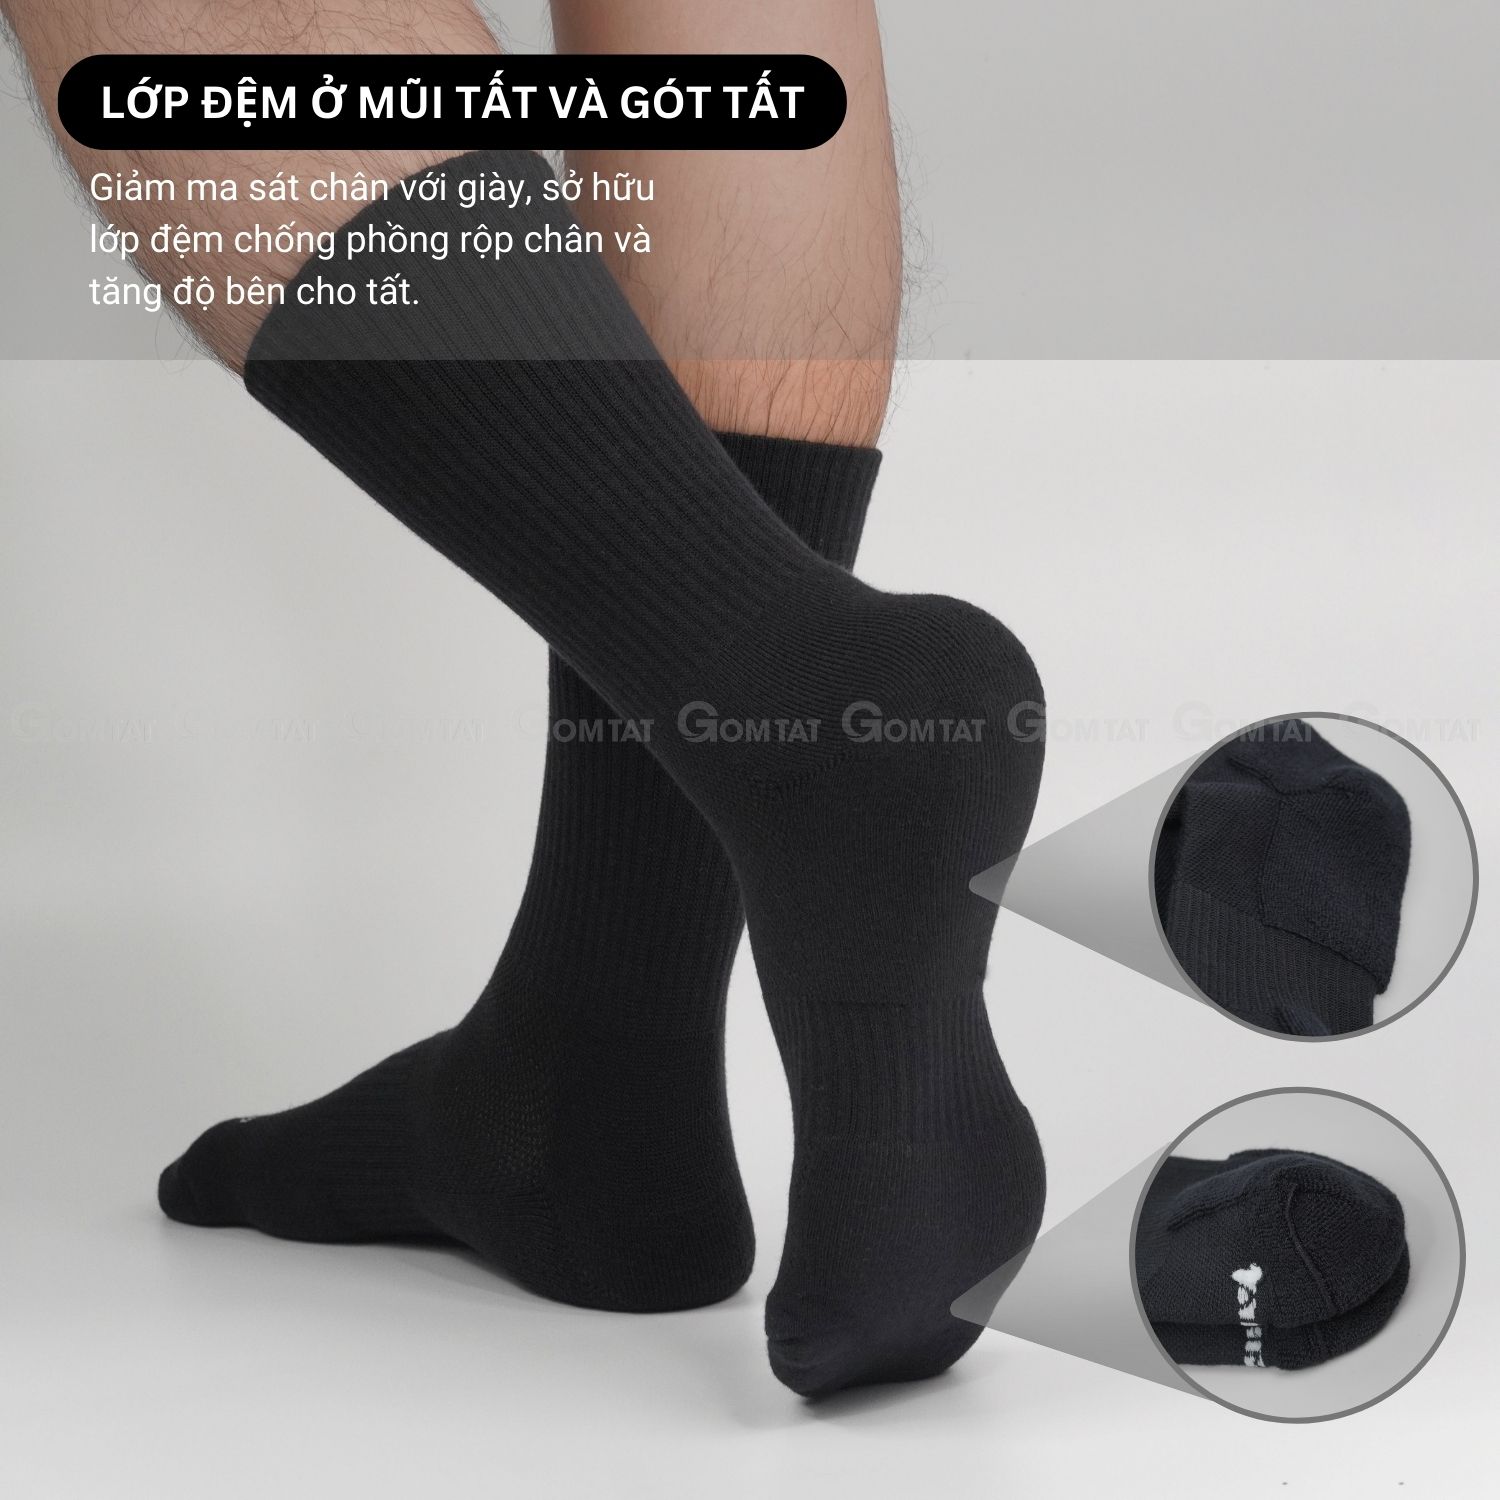 Combo 5 đôi tất đen nam nữ GOMTAT có đệm xù êm chân, sợi cotton dày dặn, khử mùi kháng khuẩn - NGAN-STA-5009-DEN-CB5